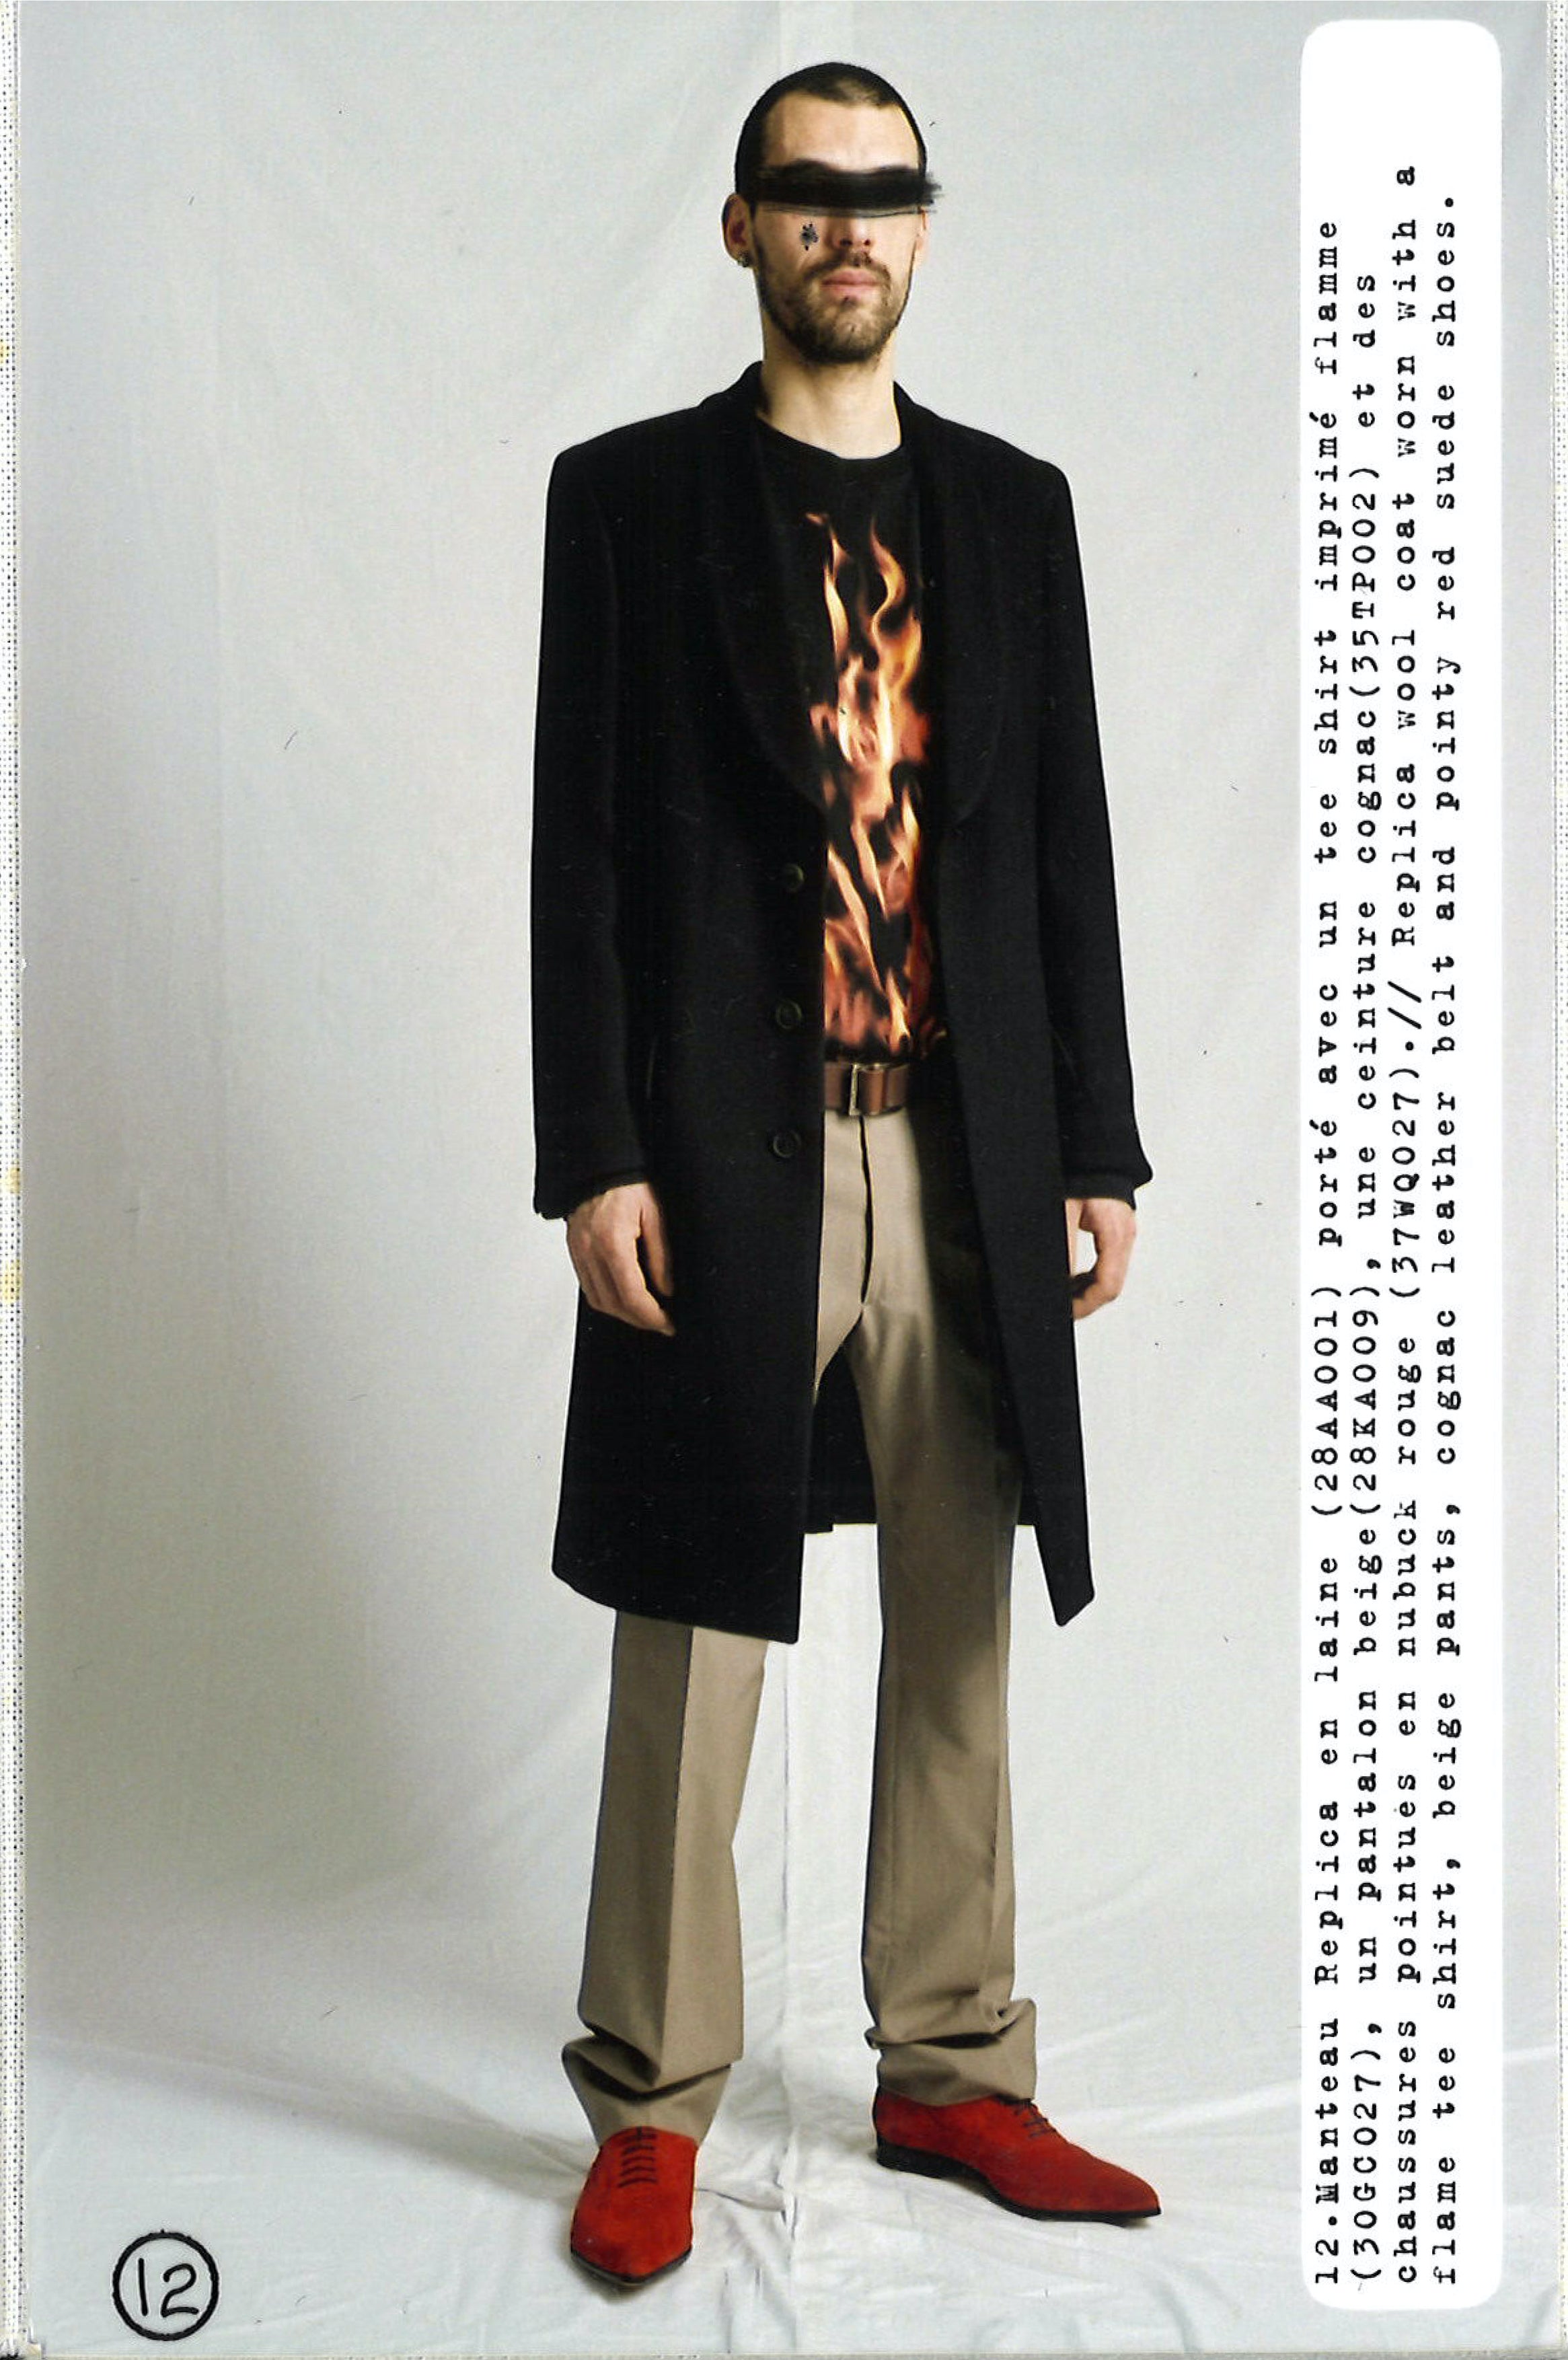 Maison Martin Margiela Lookbook
Menswear Collection Autumn/Winter 2006-07